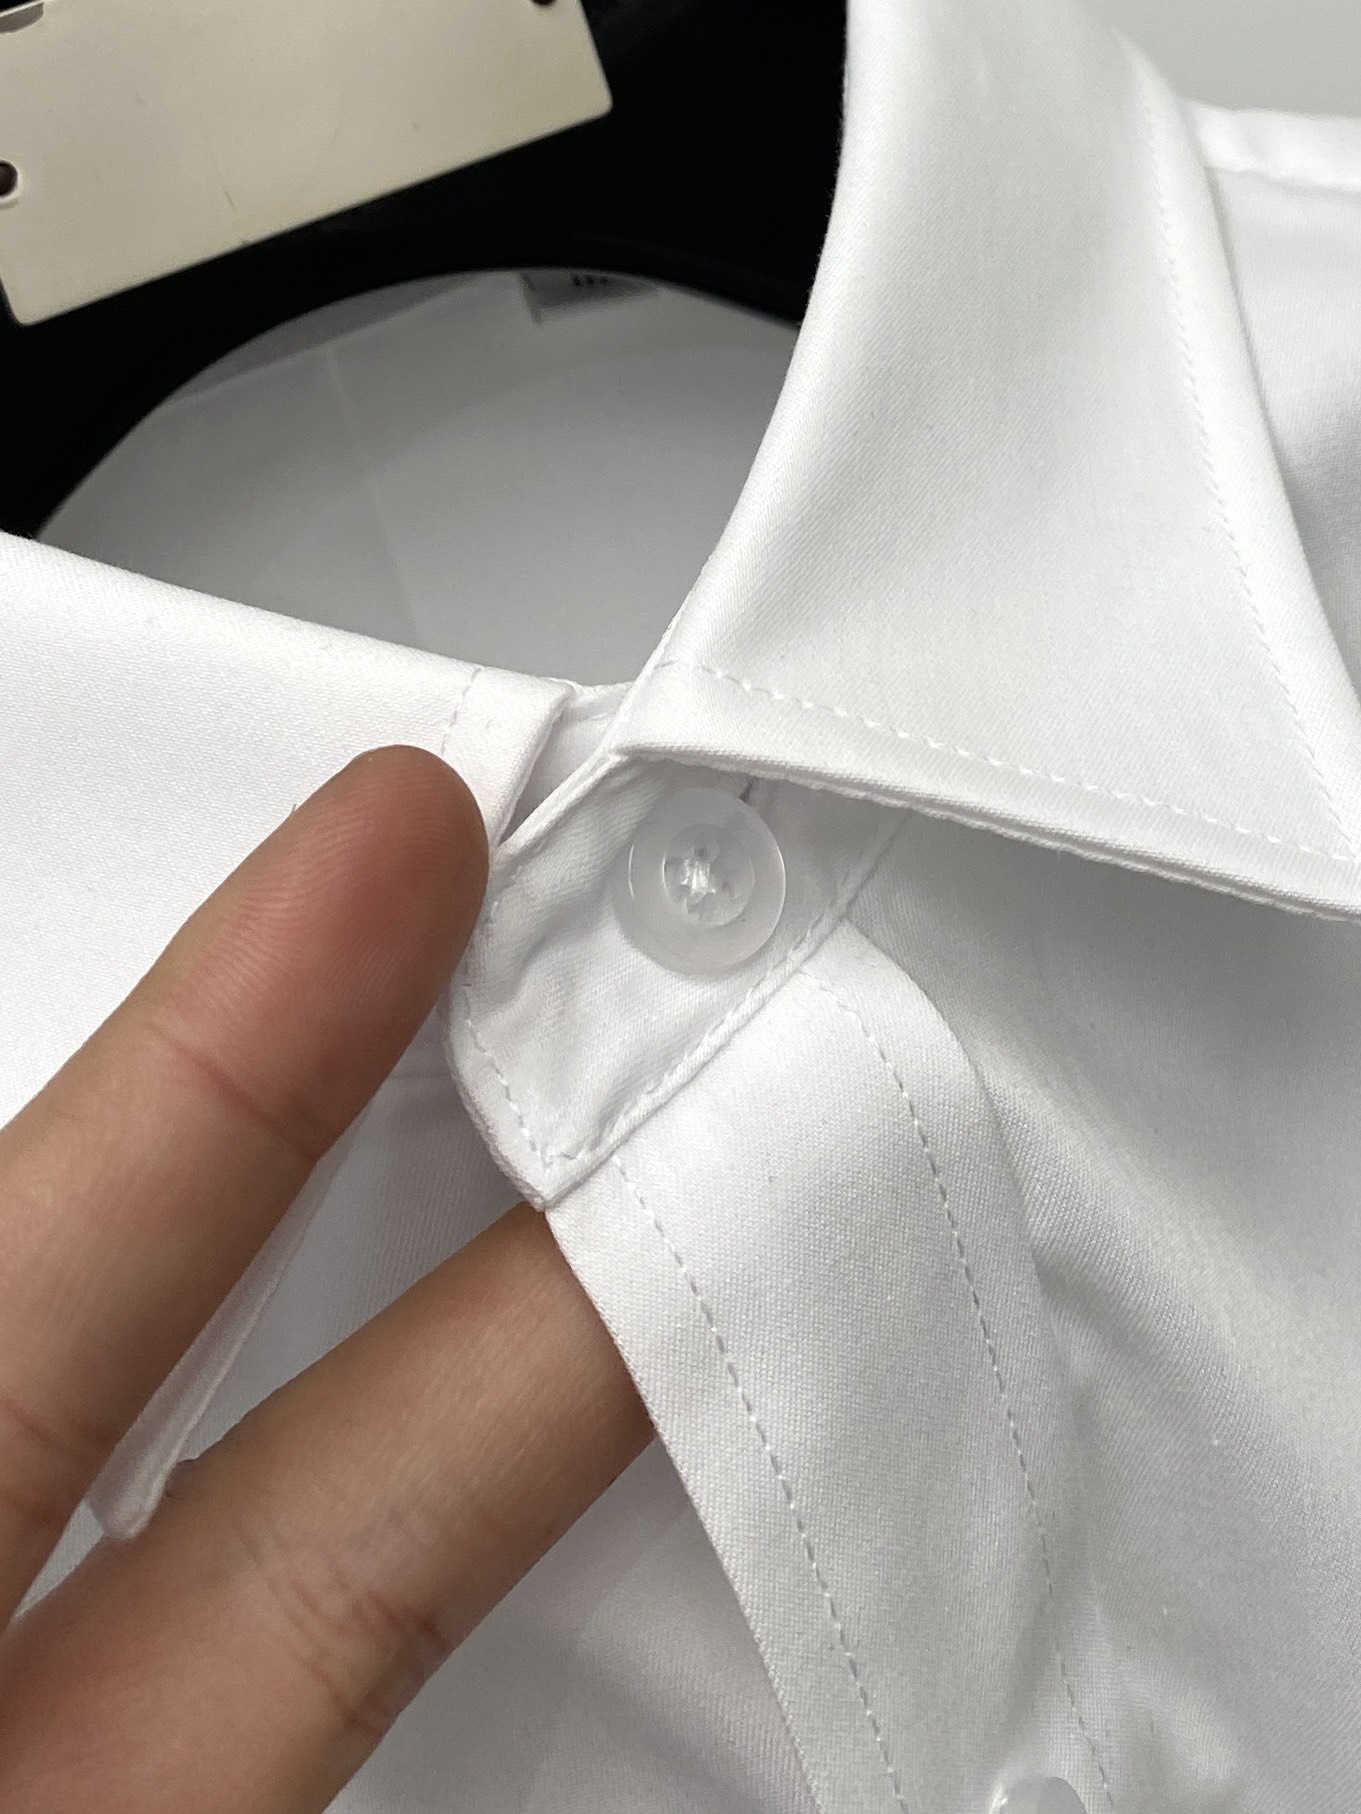 古奇2024新款衬衫打造时装艺术感立体剪裁修身版型上身效果很帅气微彰显品位整体细节可以对比效果非常有型码